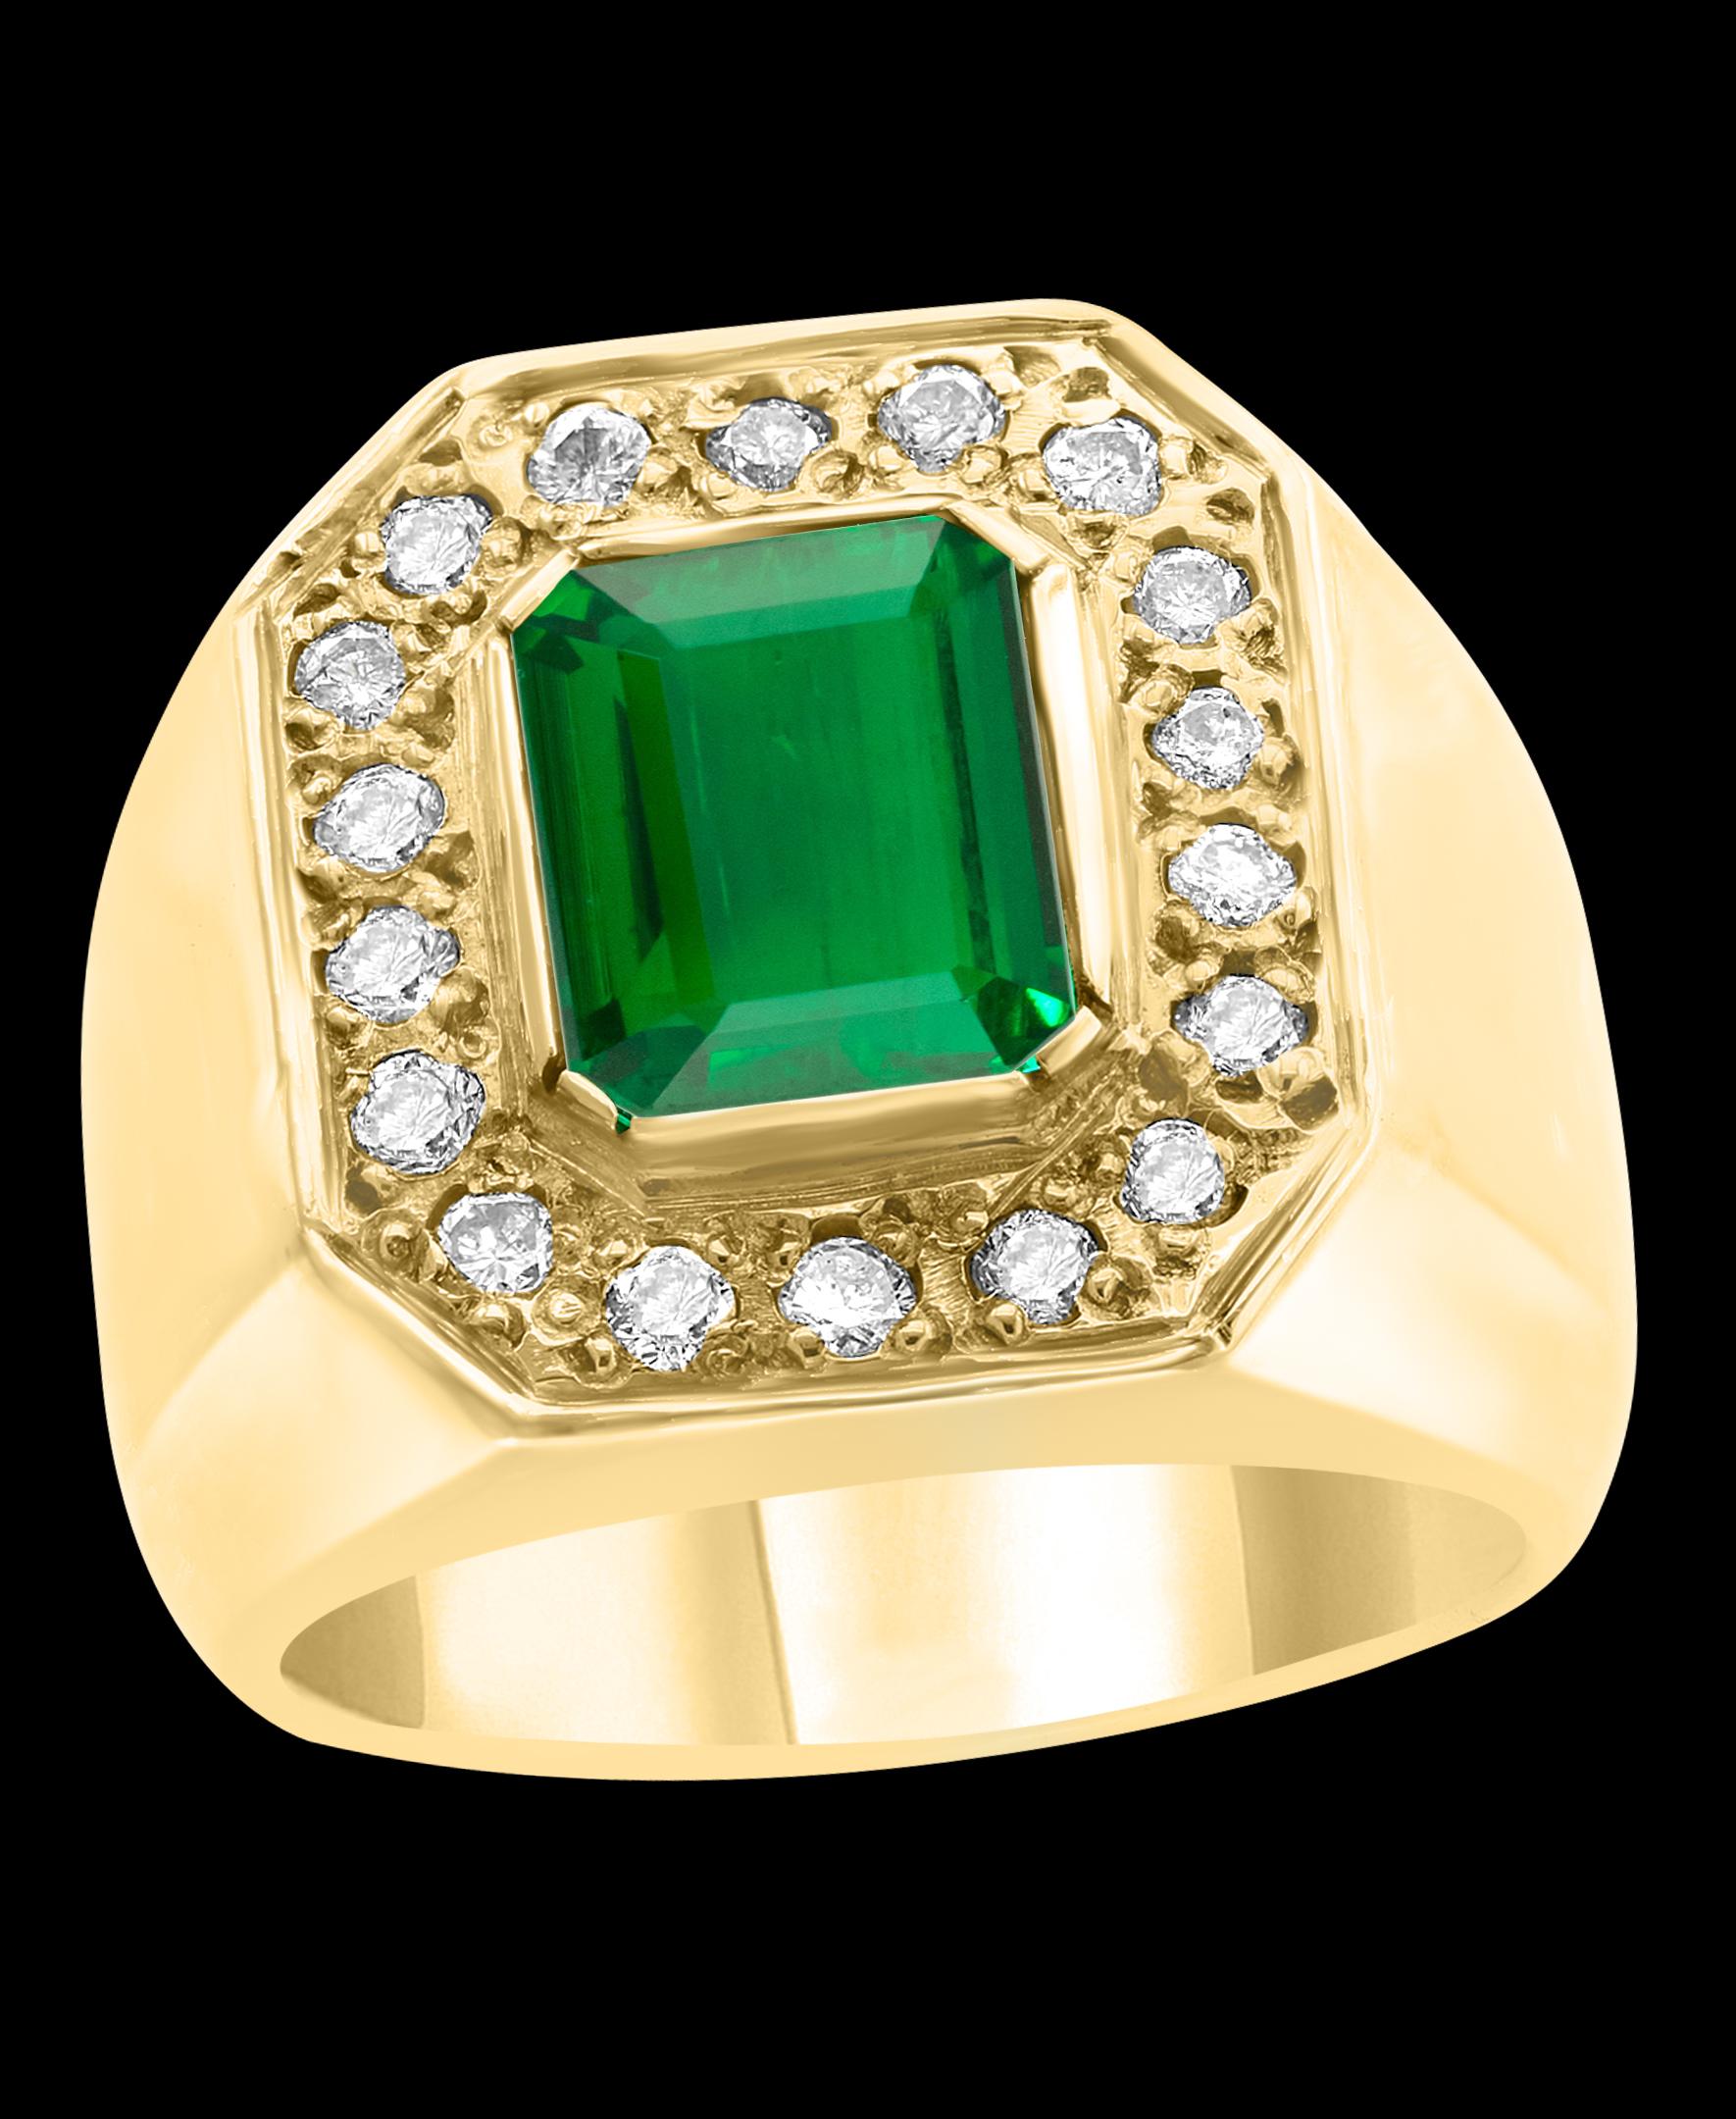 2.75 carat emerald cut diamond